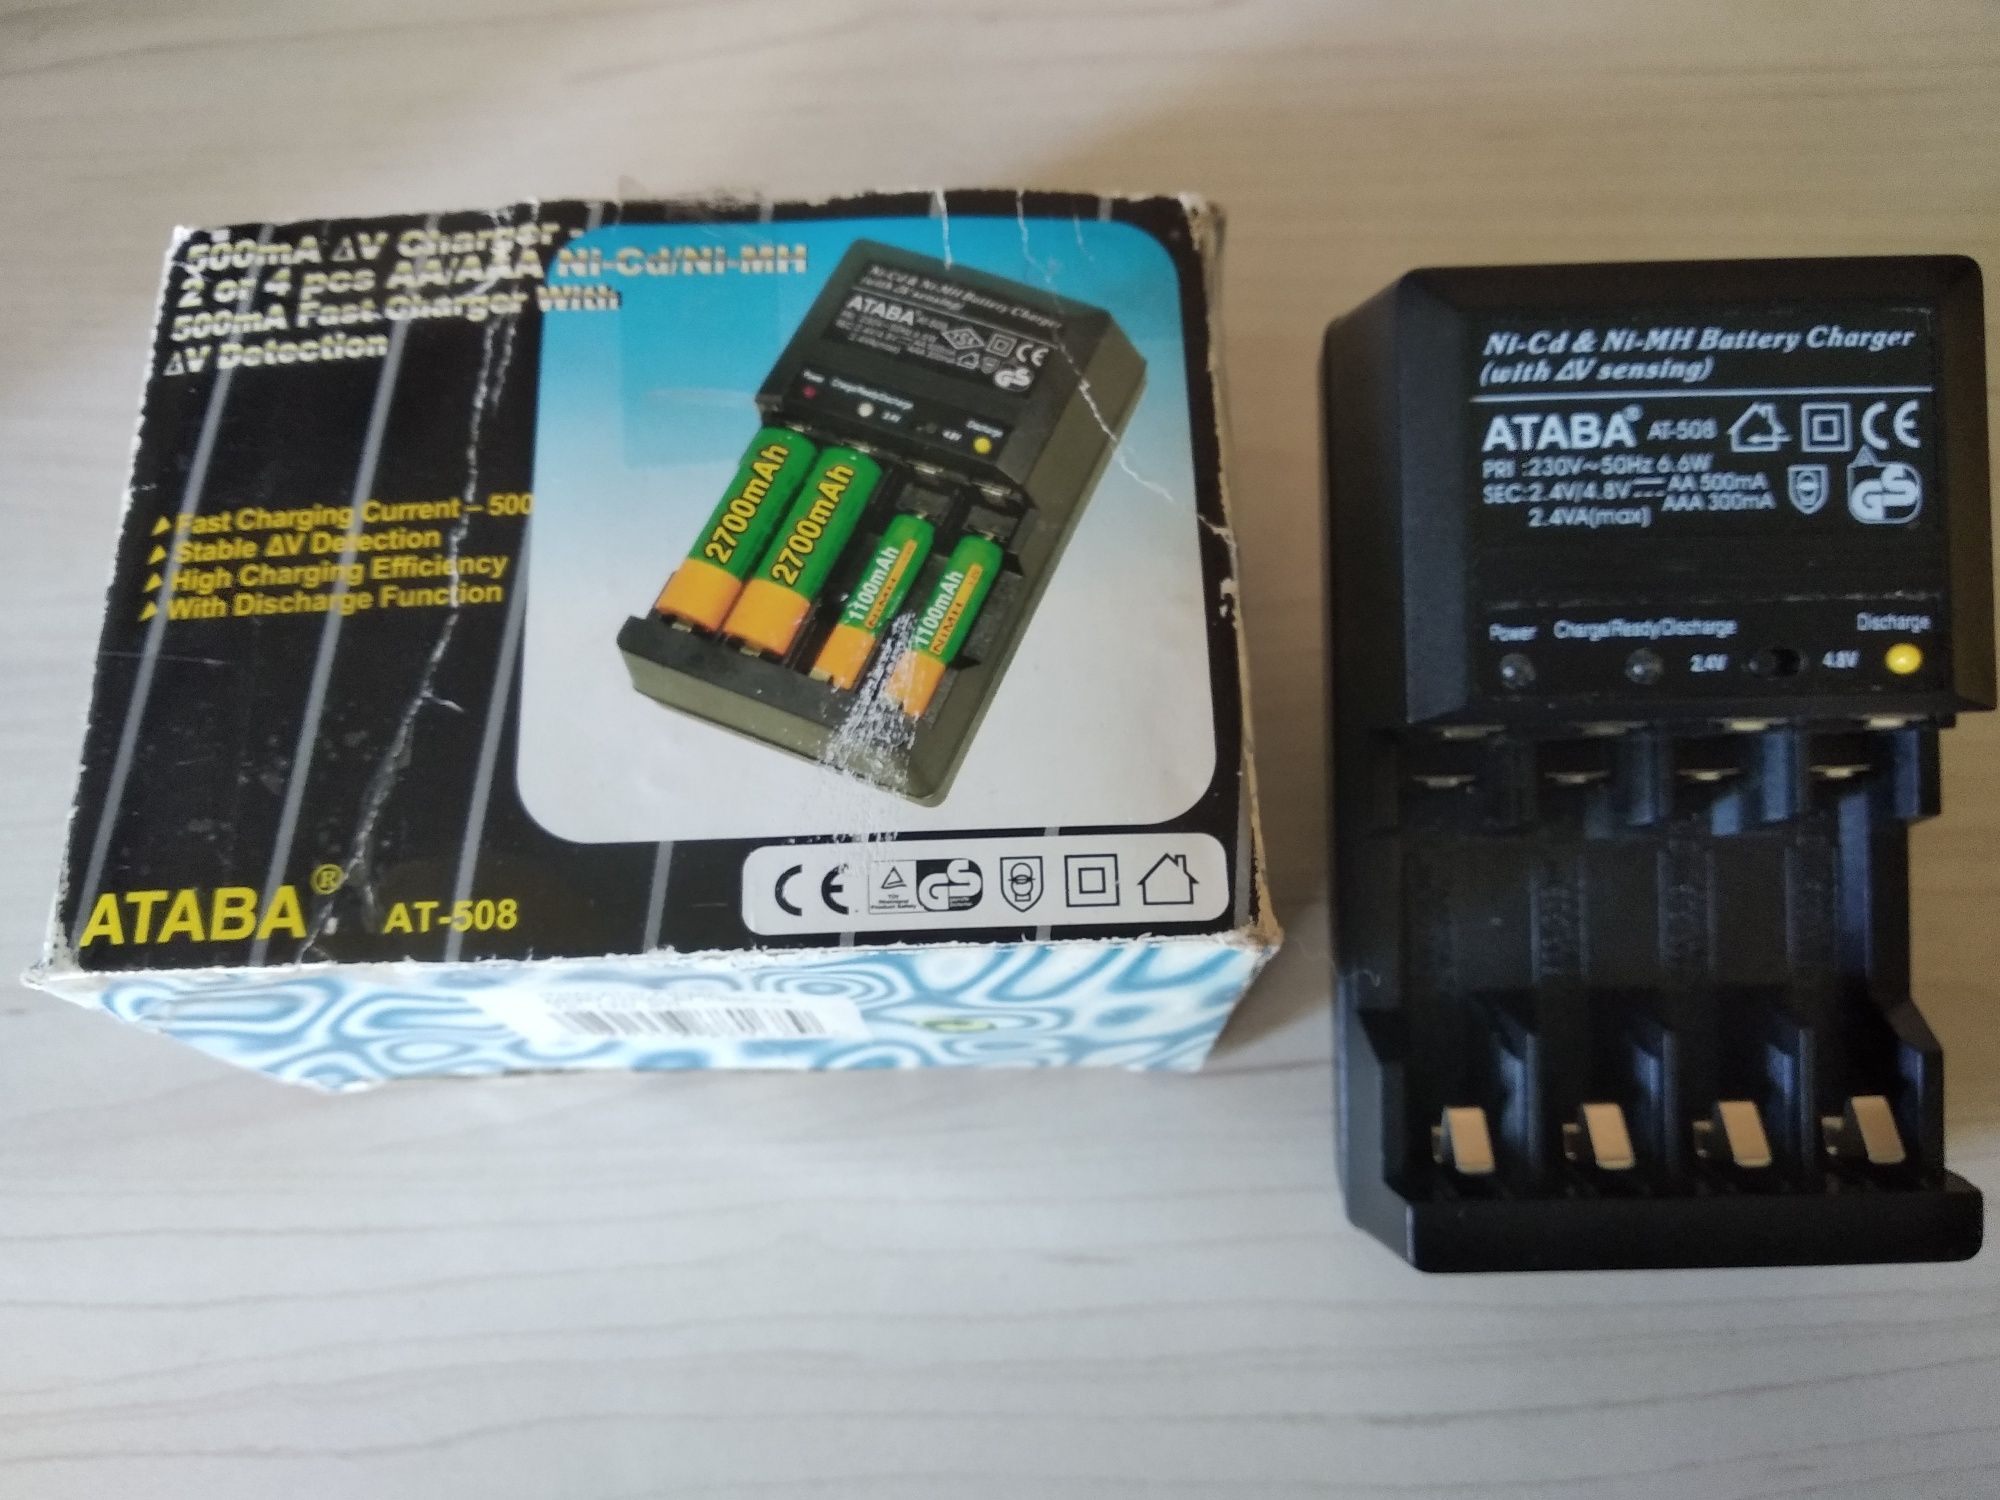 Зарядное устройство для Ni-Cd/Ni-Mn аккумуляторов ATABA AT-508